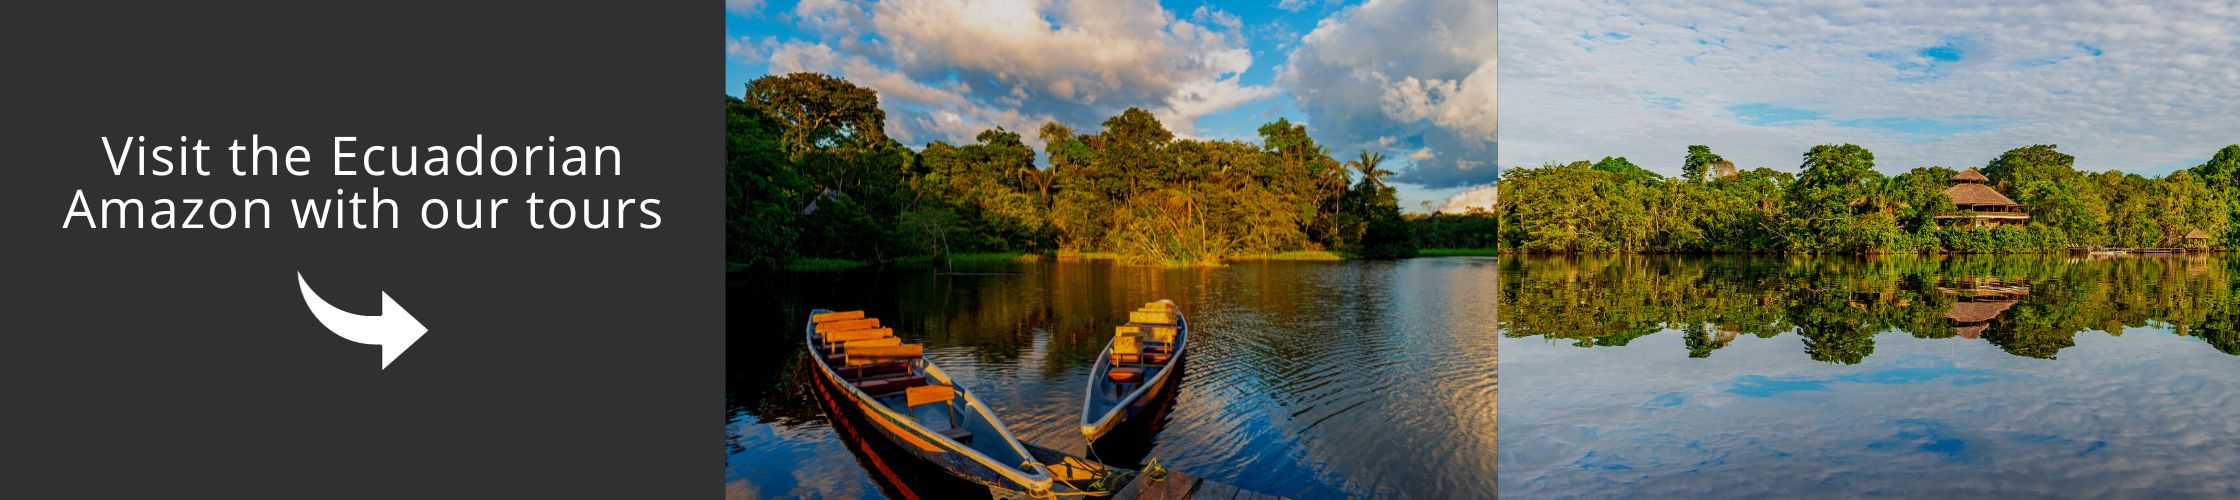 Visit the Ecuadorian Amazon with our tours